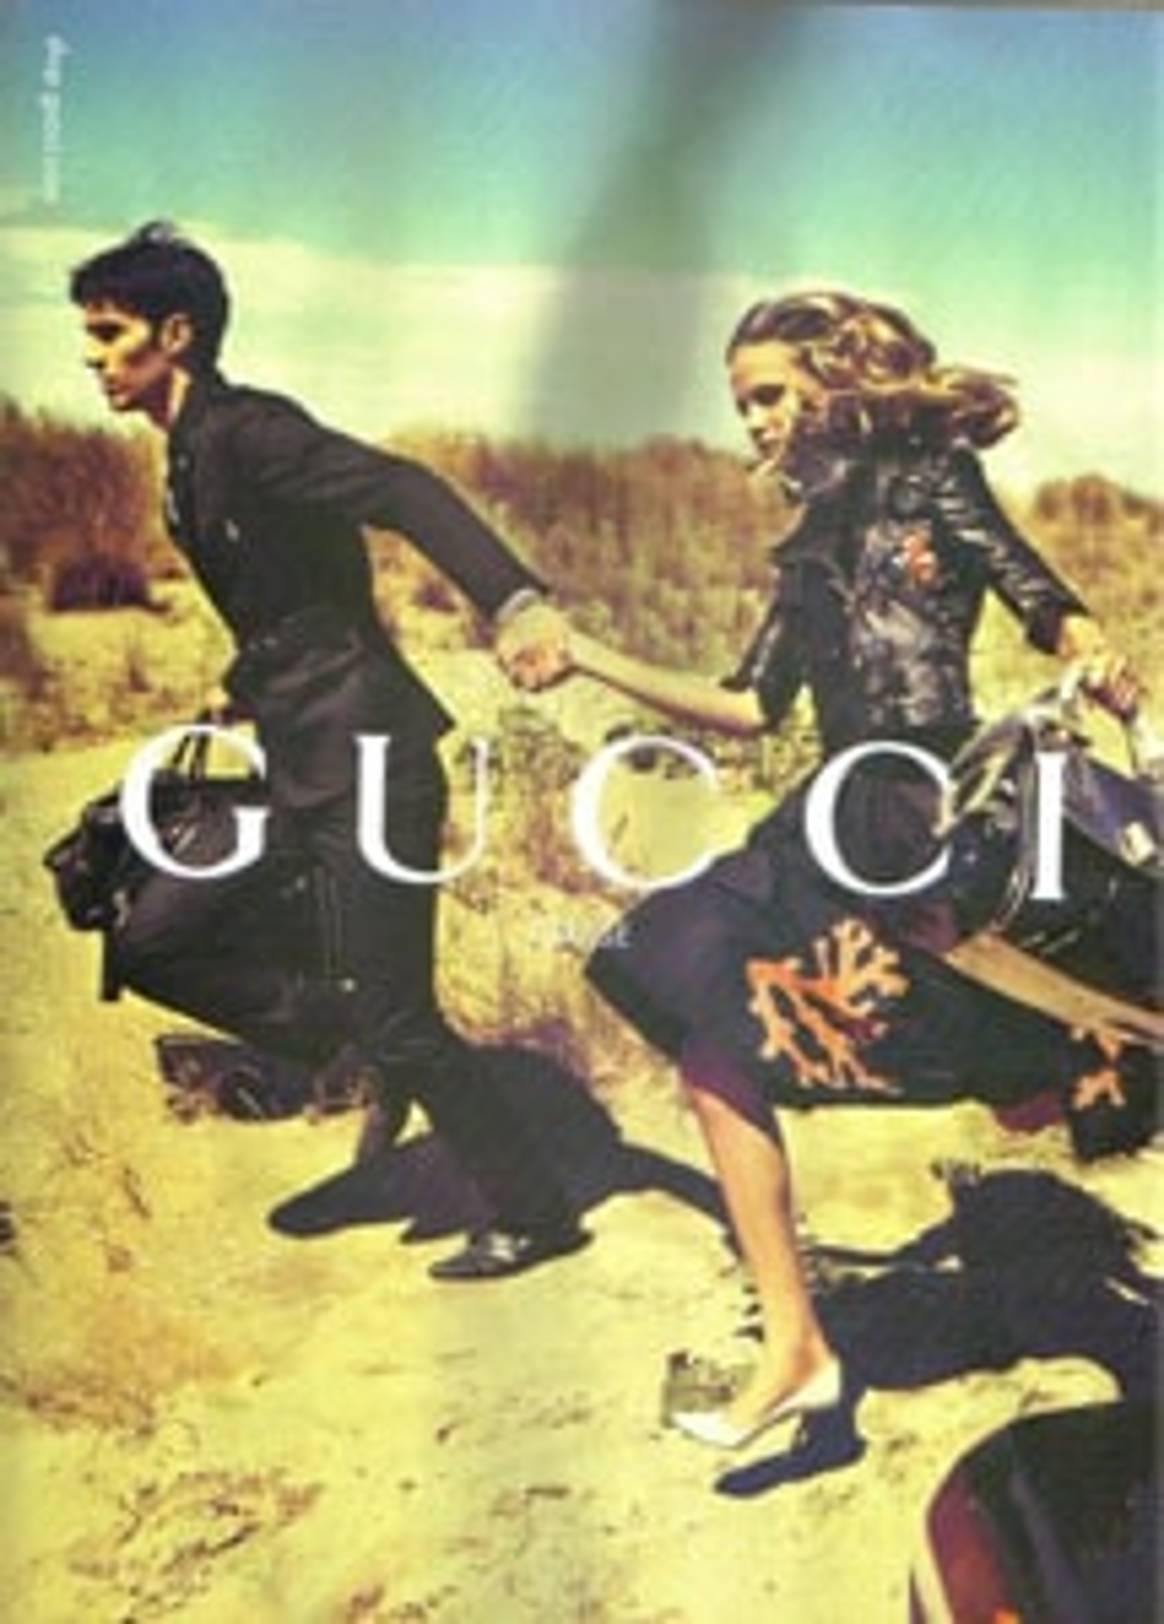 Gucci encabeza las preferencias mundiales